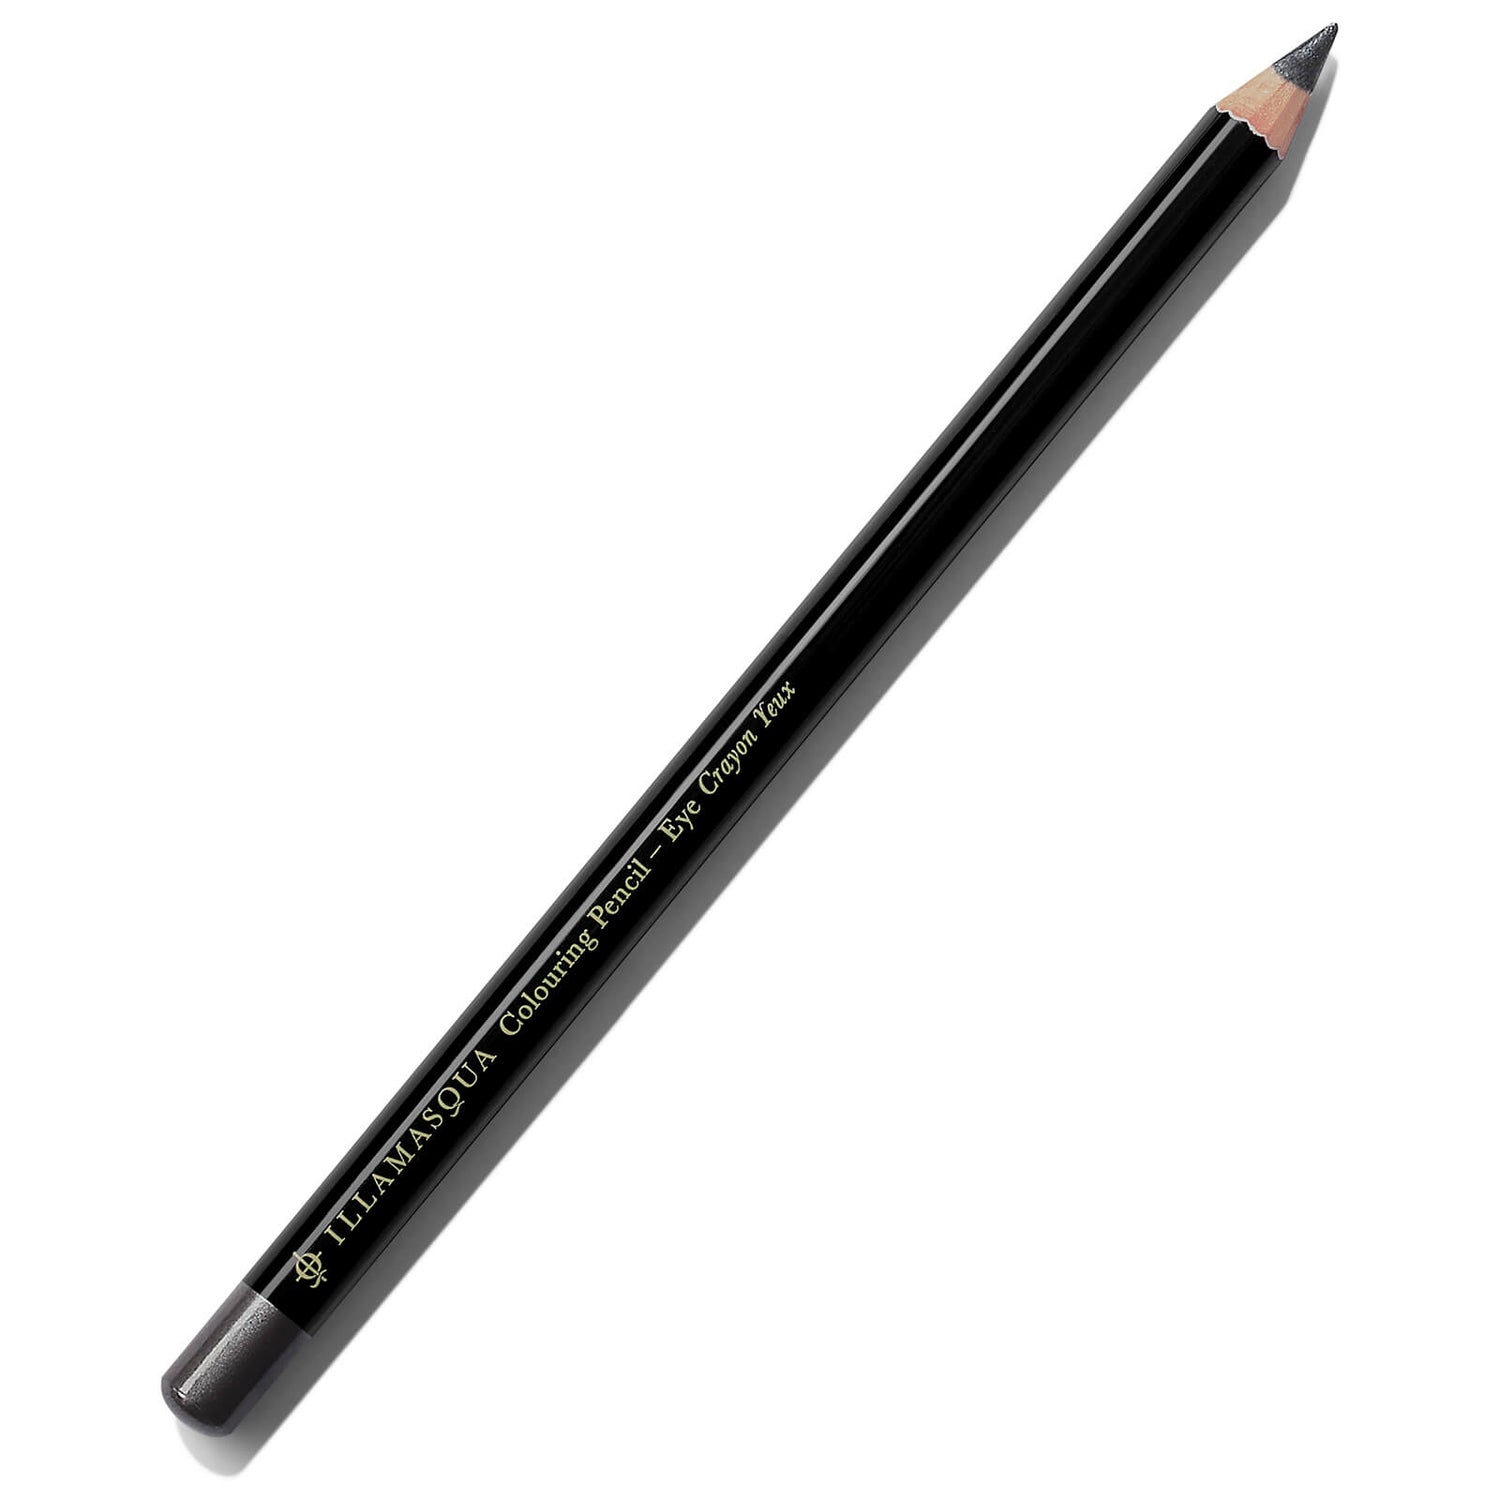 Illamasqua Colouring Eye Pencil 1.4g (Various Shades)